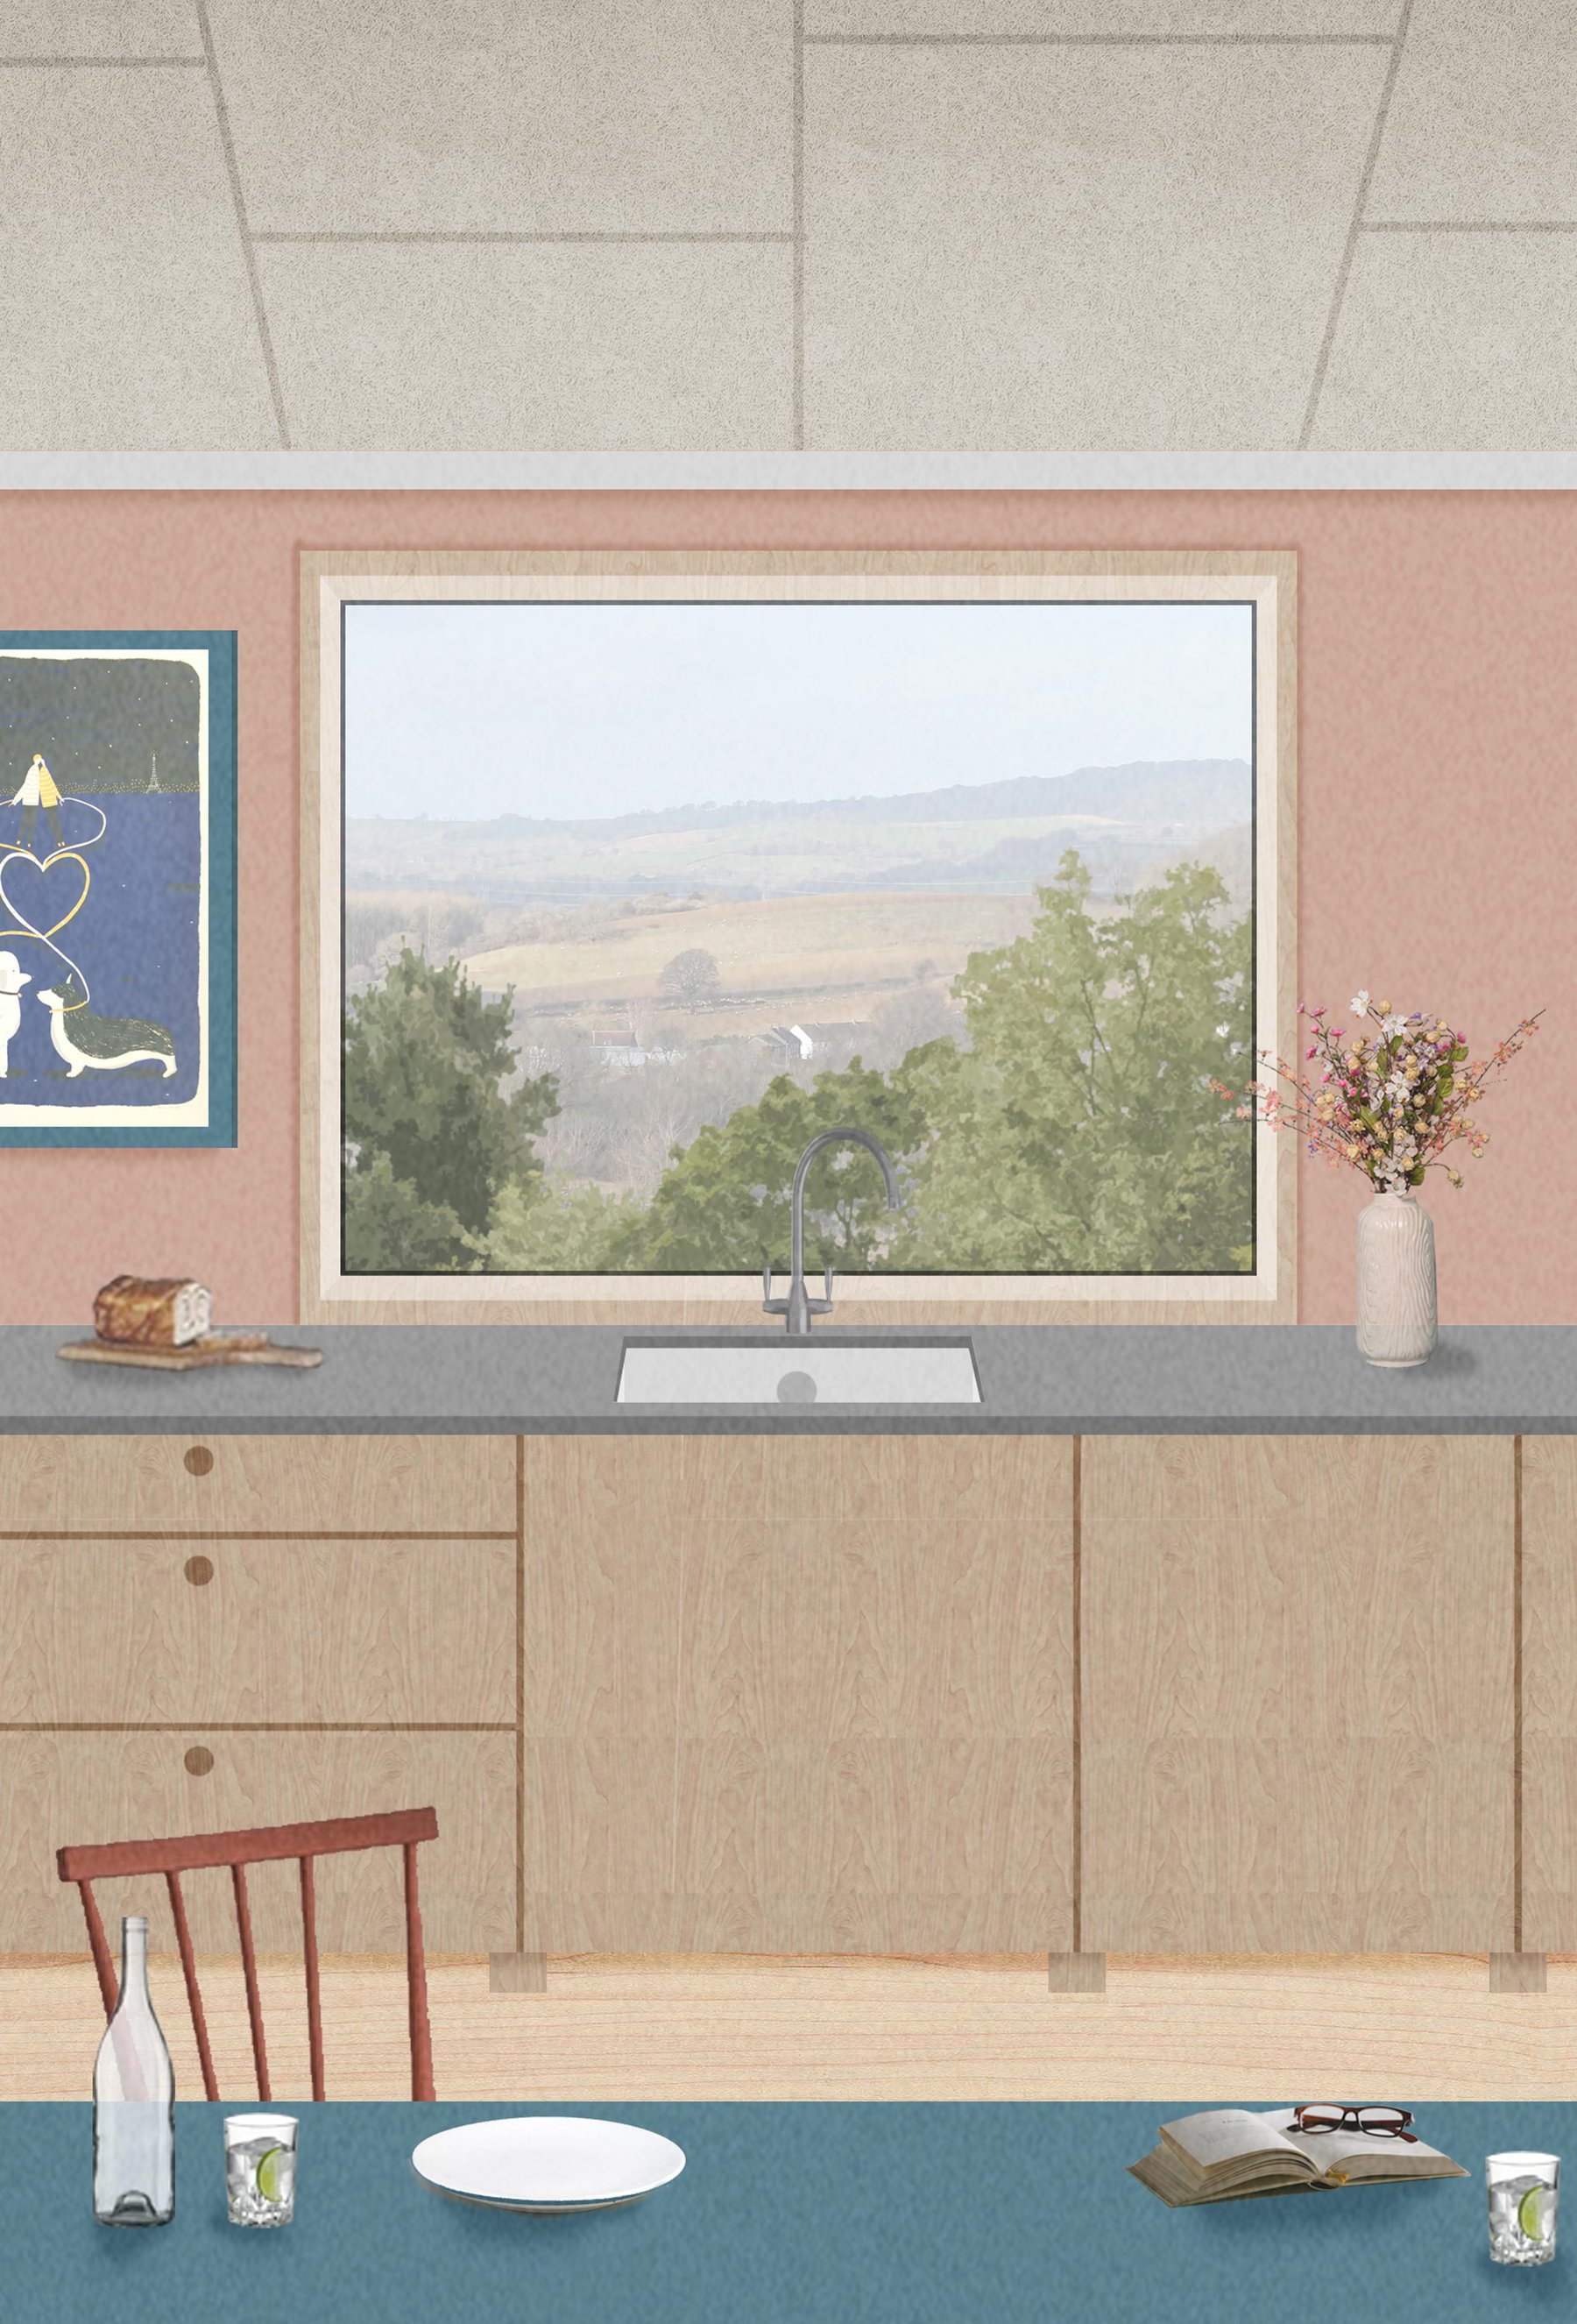 Morgan Davies, Interior Perspective, Kitchen still with view of wider landscape.jpg